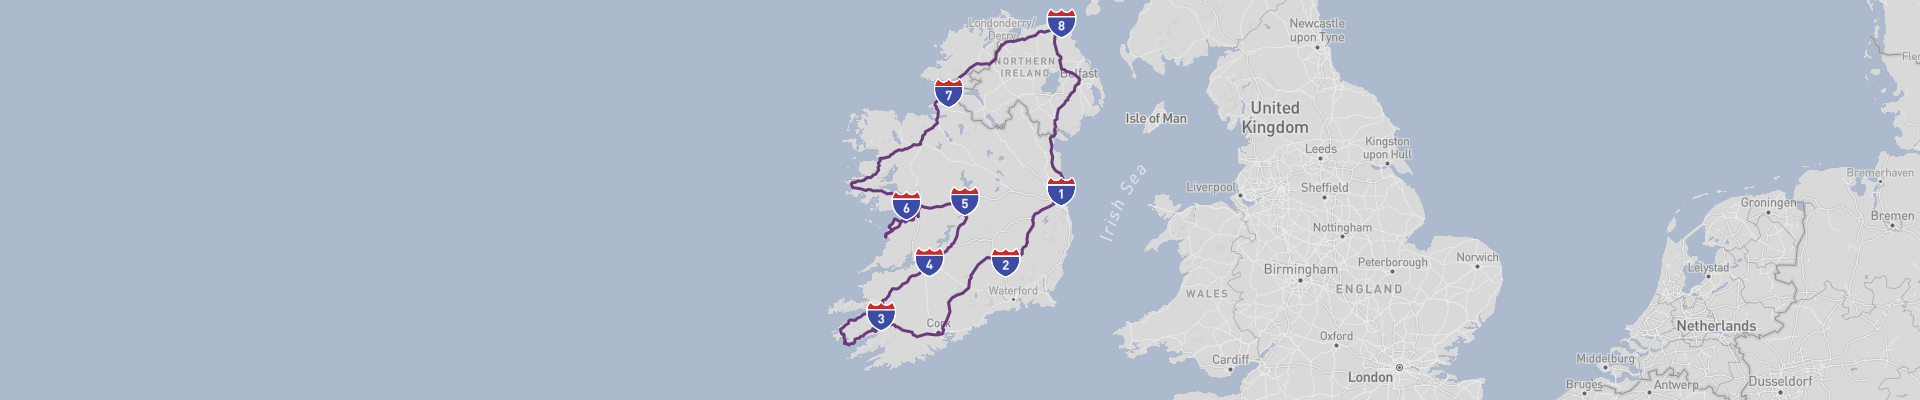 Entire Ireland Road Trip